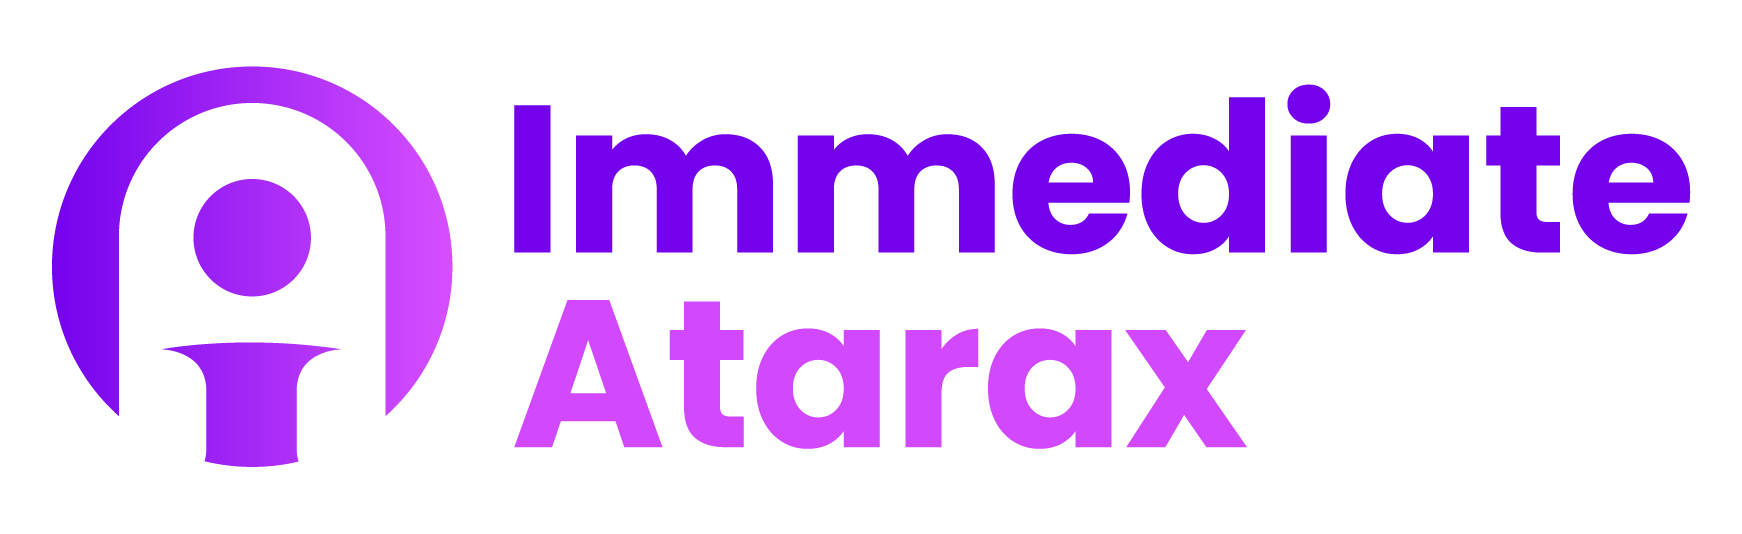 Immediate Atarax - संपर्क करें